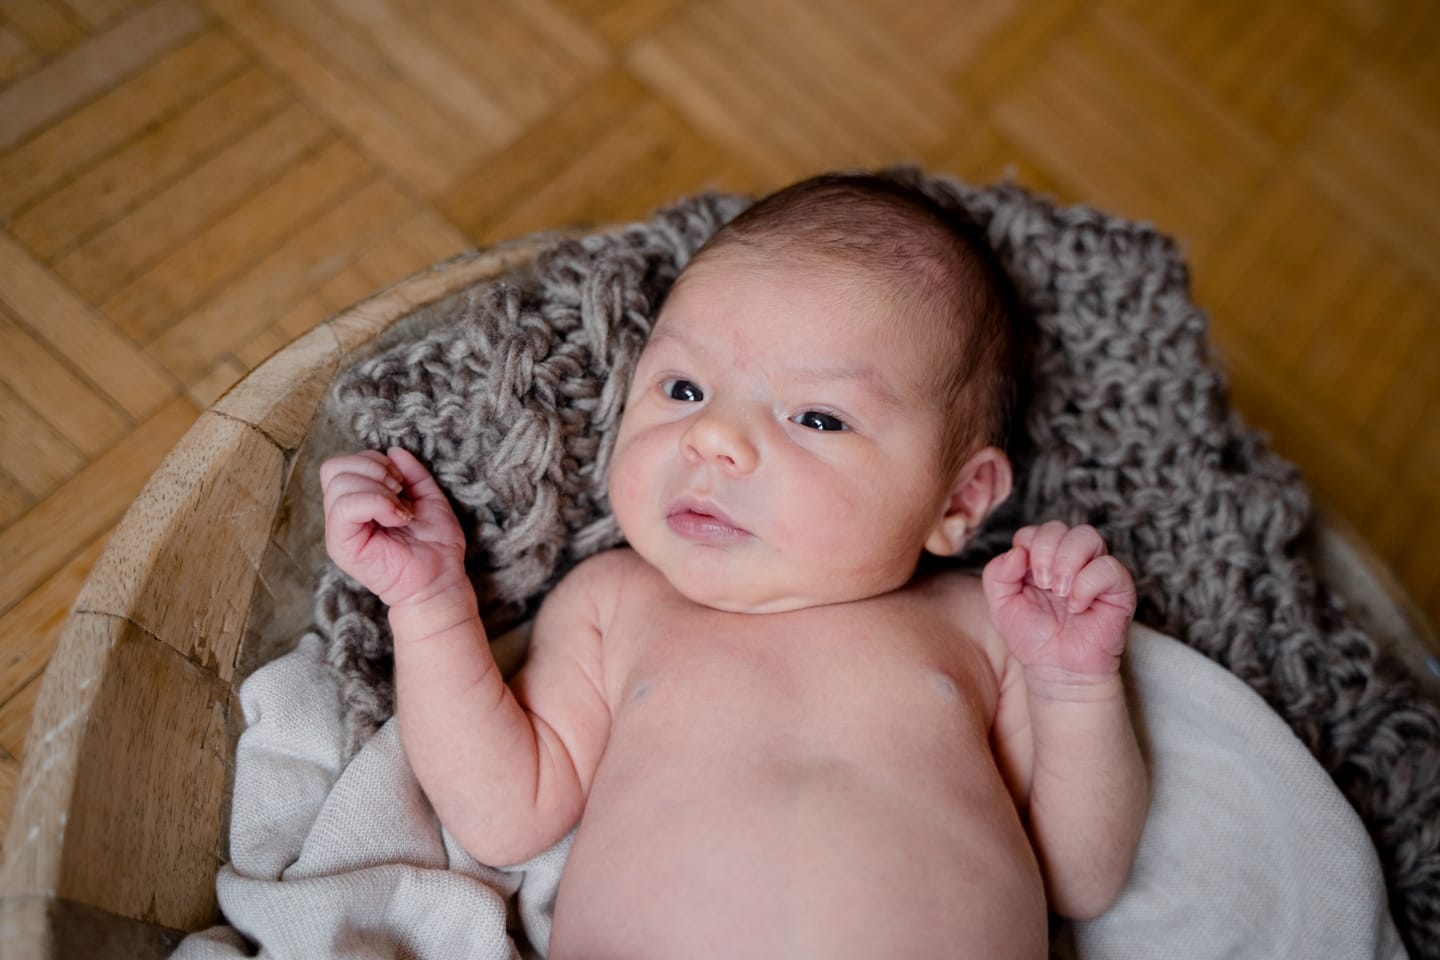 newborn baby fotografie ulm augsburg muenchen allgaeu